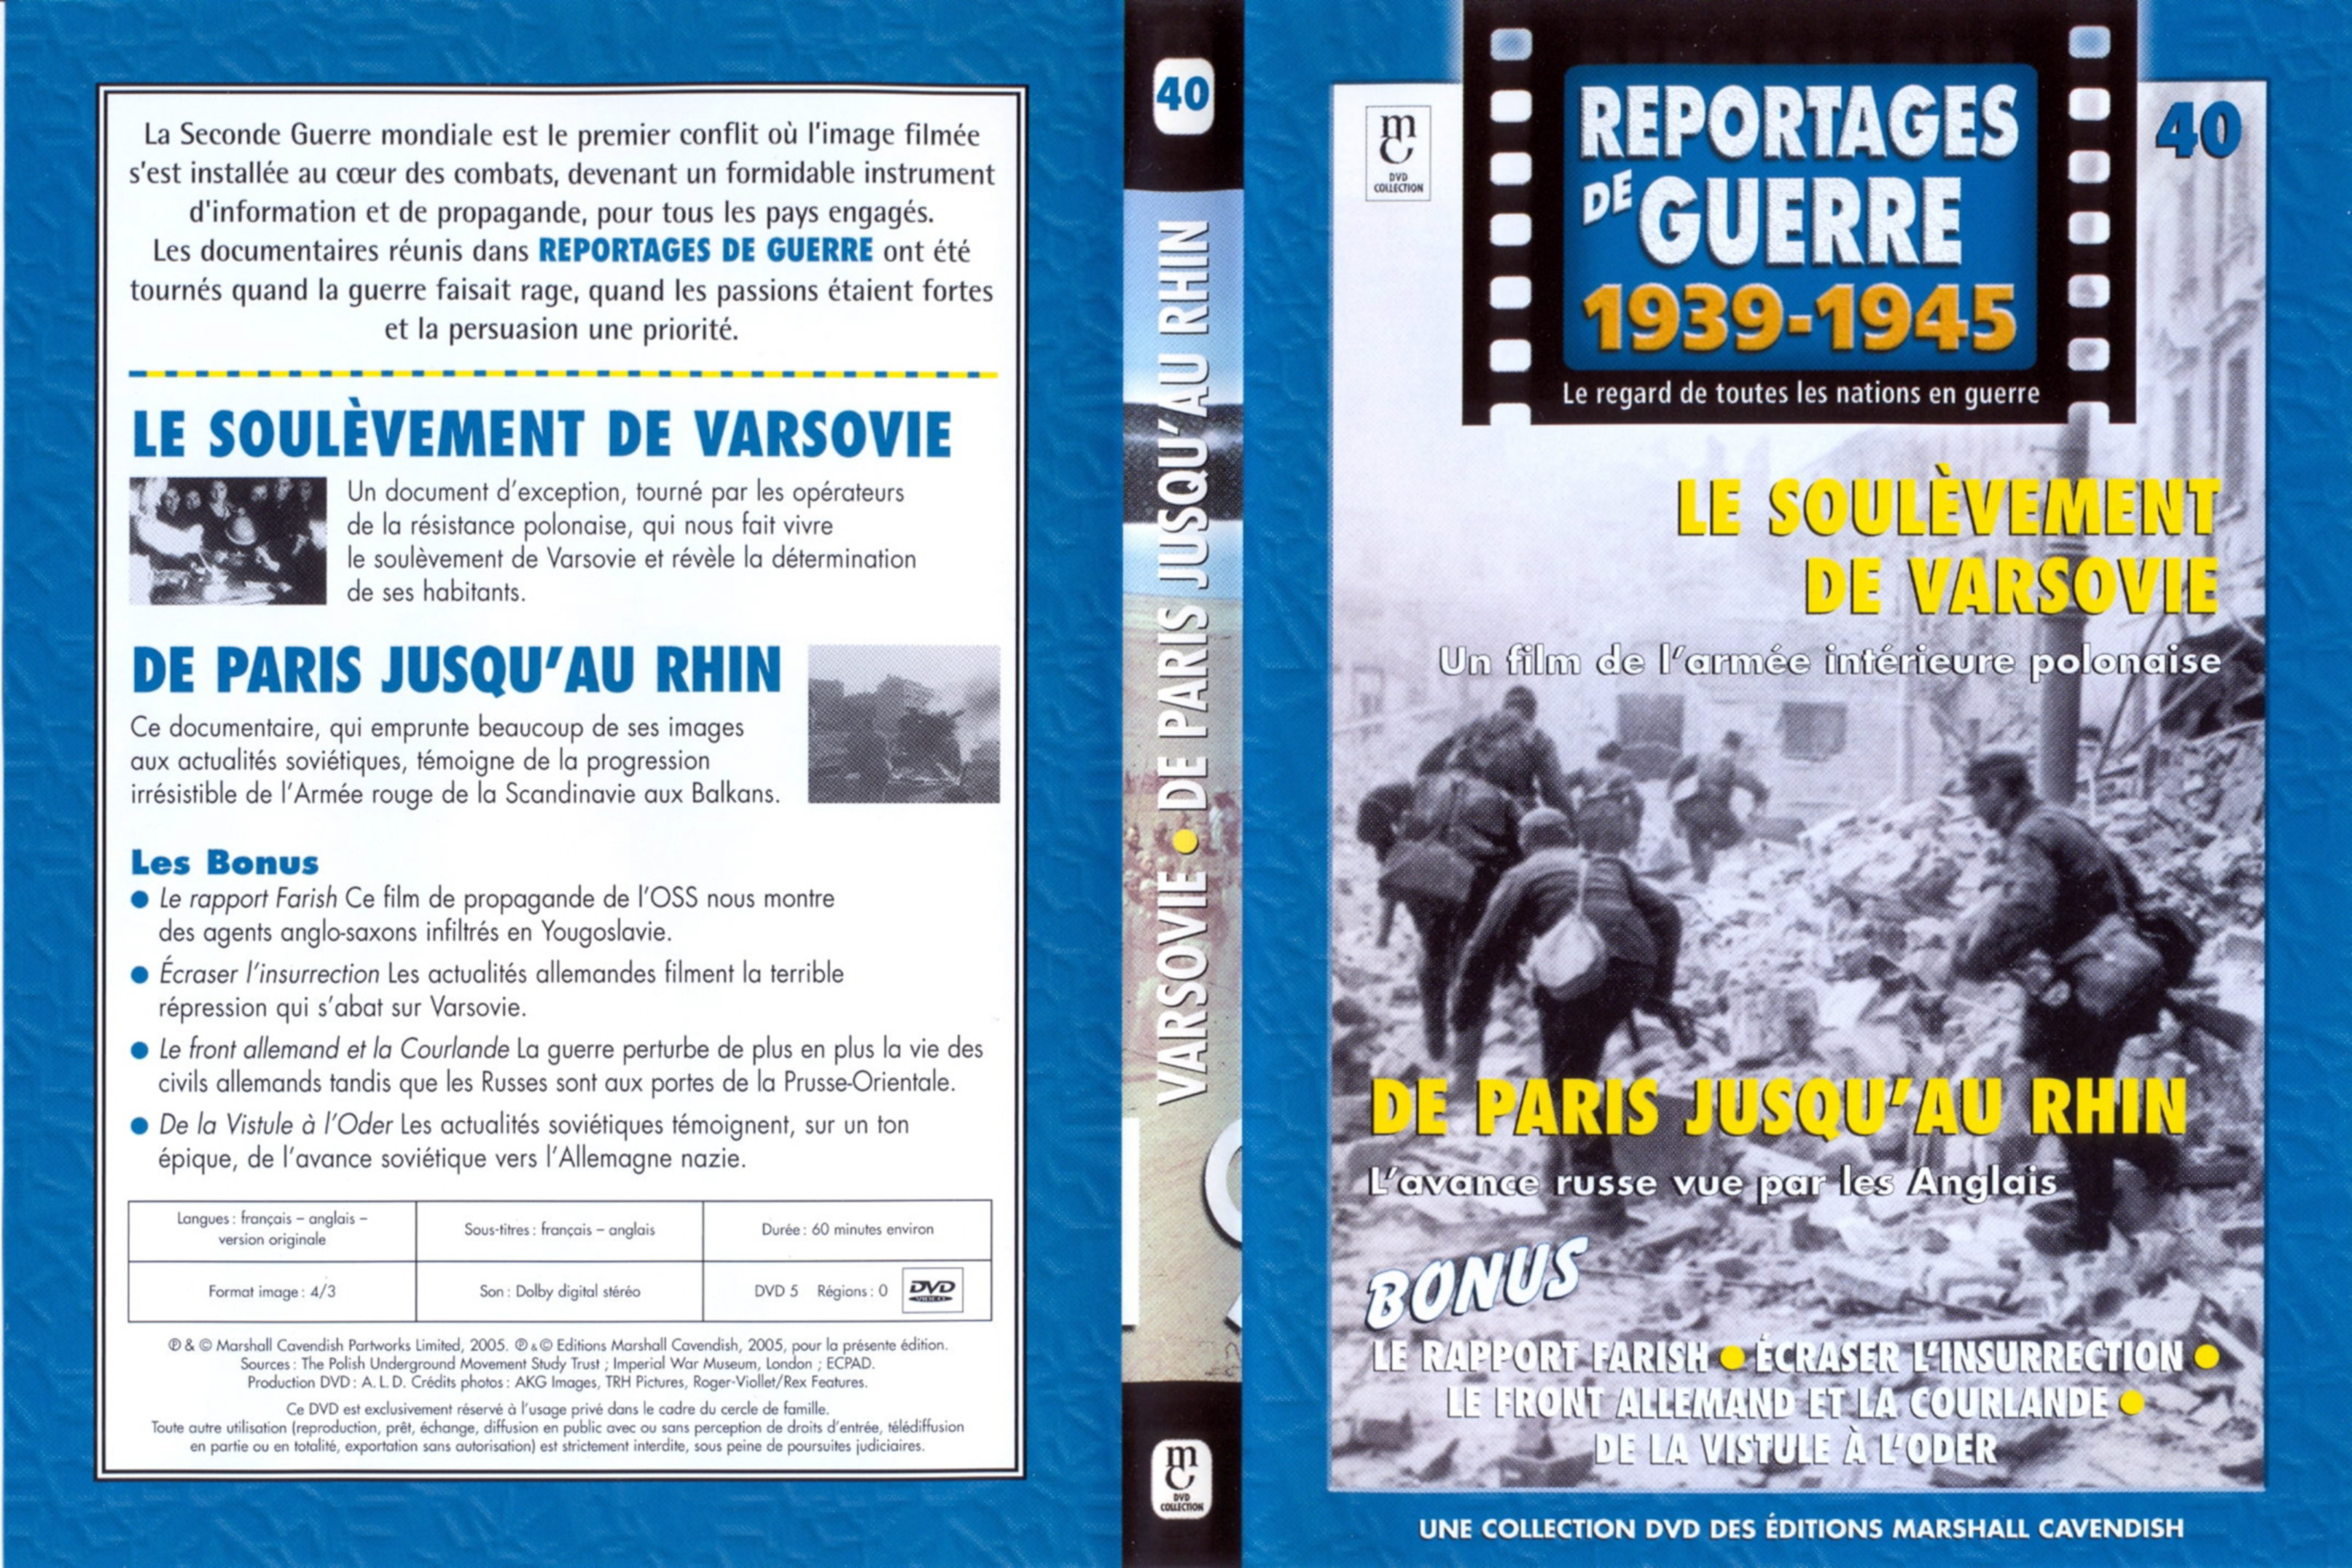 Jaquette DVD Reportages de guerre vol 40